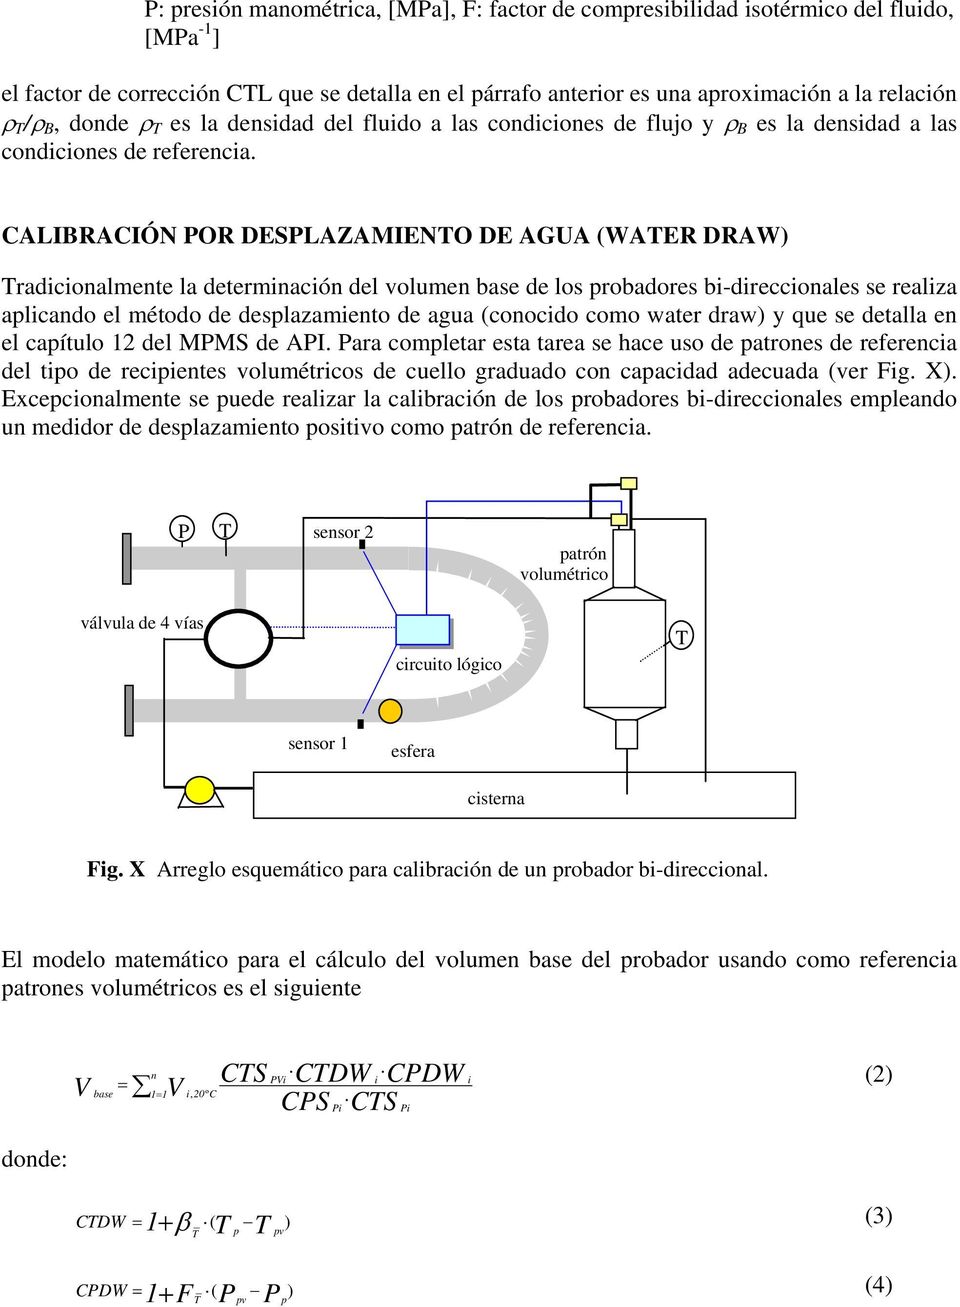 CALIBRACIÓN POR DESPLAZAMIENO DE AGUA (WAER DRAW) radicionalmente la determinación del volumen base de los probadores bi-direccionales se realiza aplicando el método de desplazamiento de agua